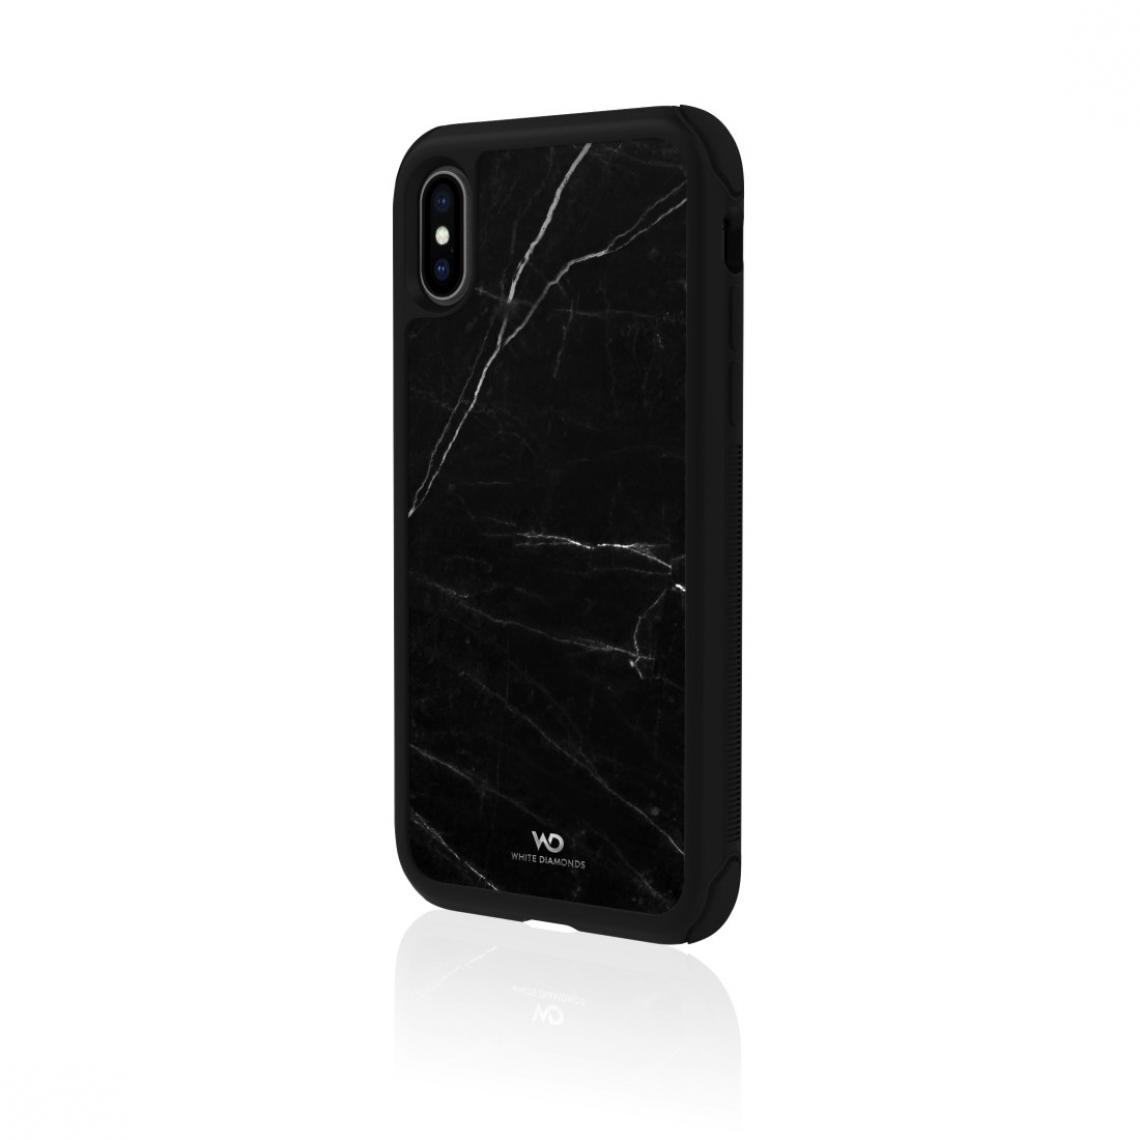 White Diamonds - Coque de protection "Tough Marble" pour iPhone X/Xs, noir - Coque, étui smartphone